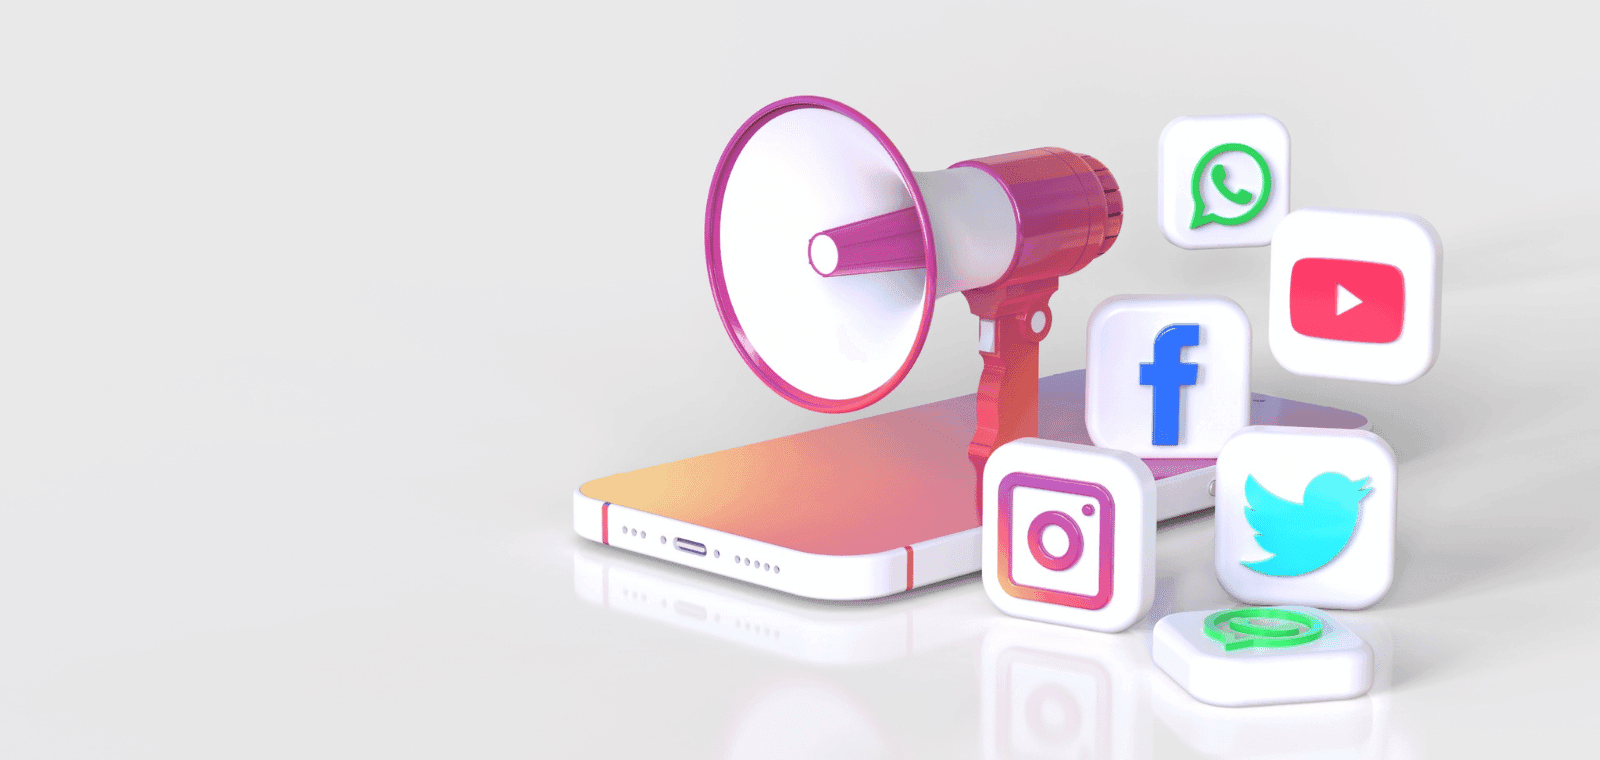 1/2- Comment créer une stratégie marketing efficace sur Instagram